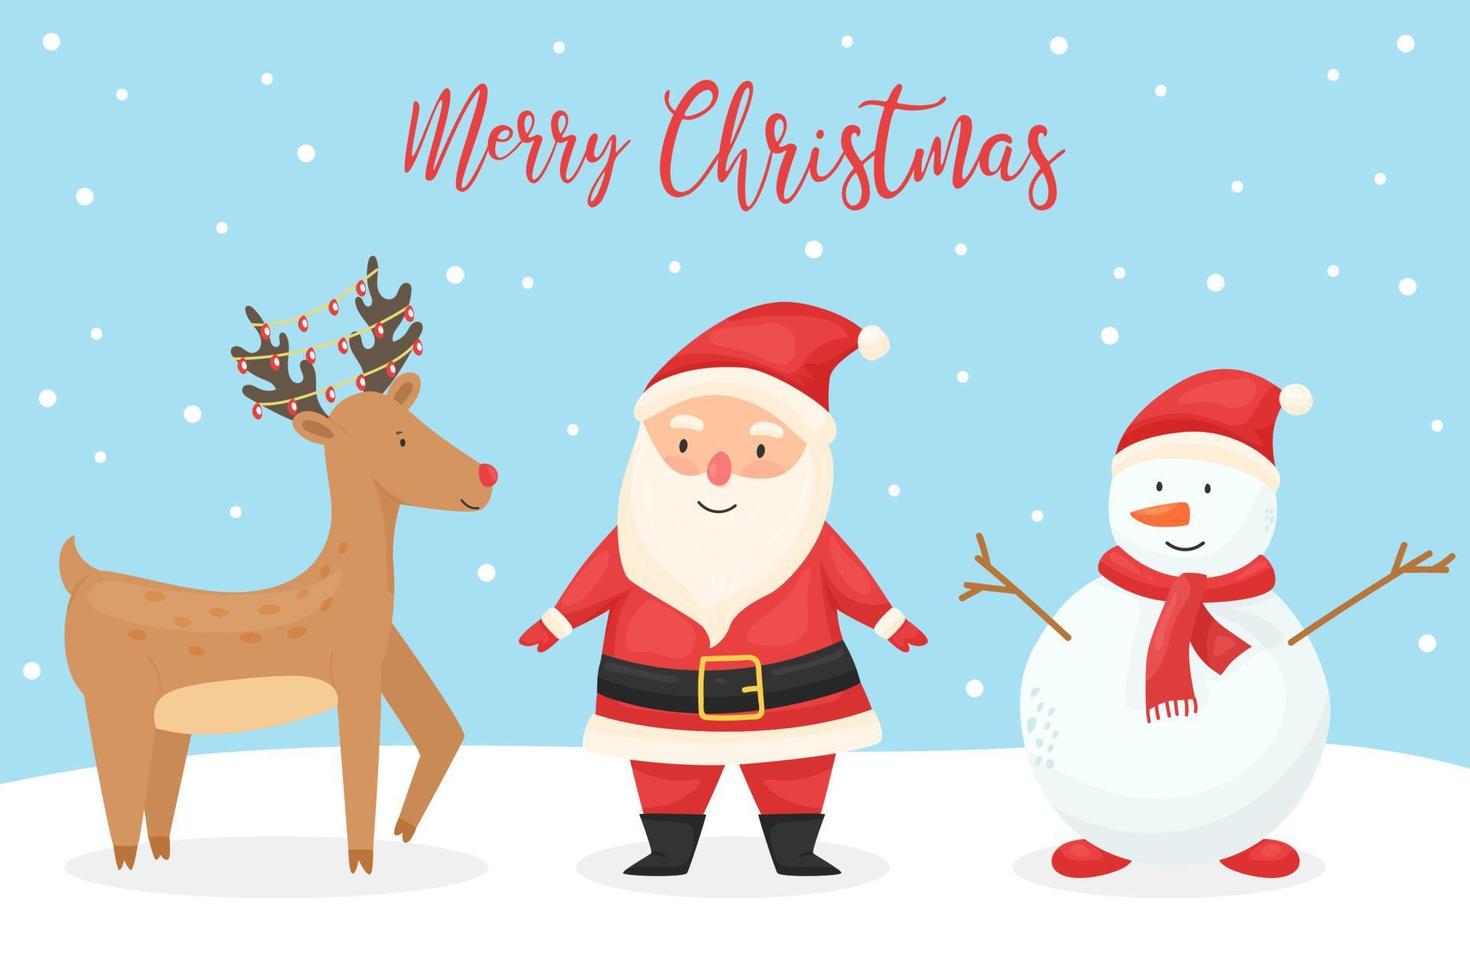 Reindeer, Santa Claus, snowman. Cartoon style. Winter. Christmas card. Snow. Cartoon style. For your design. vector